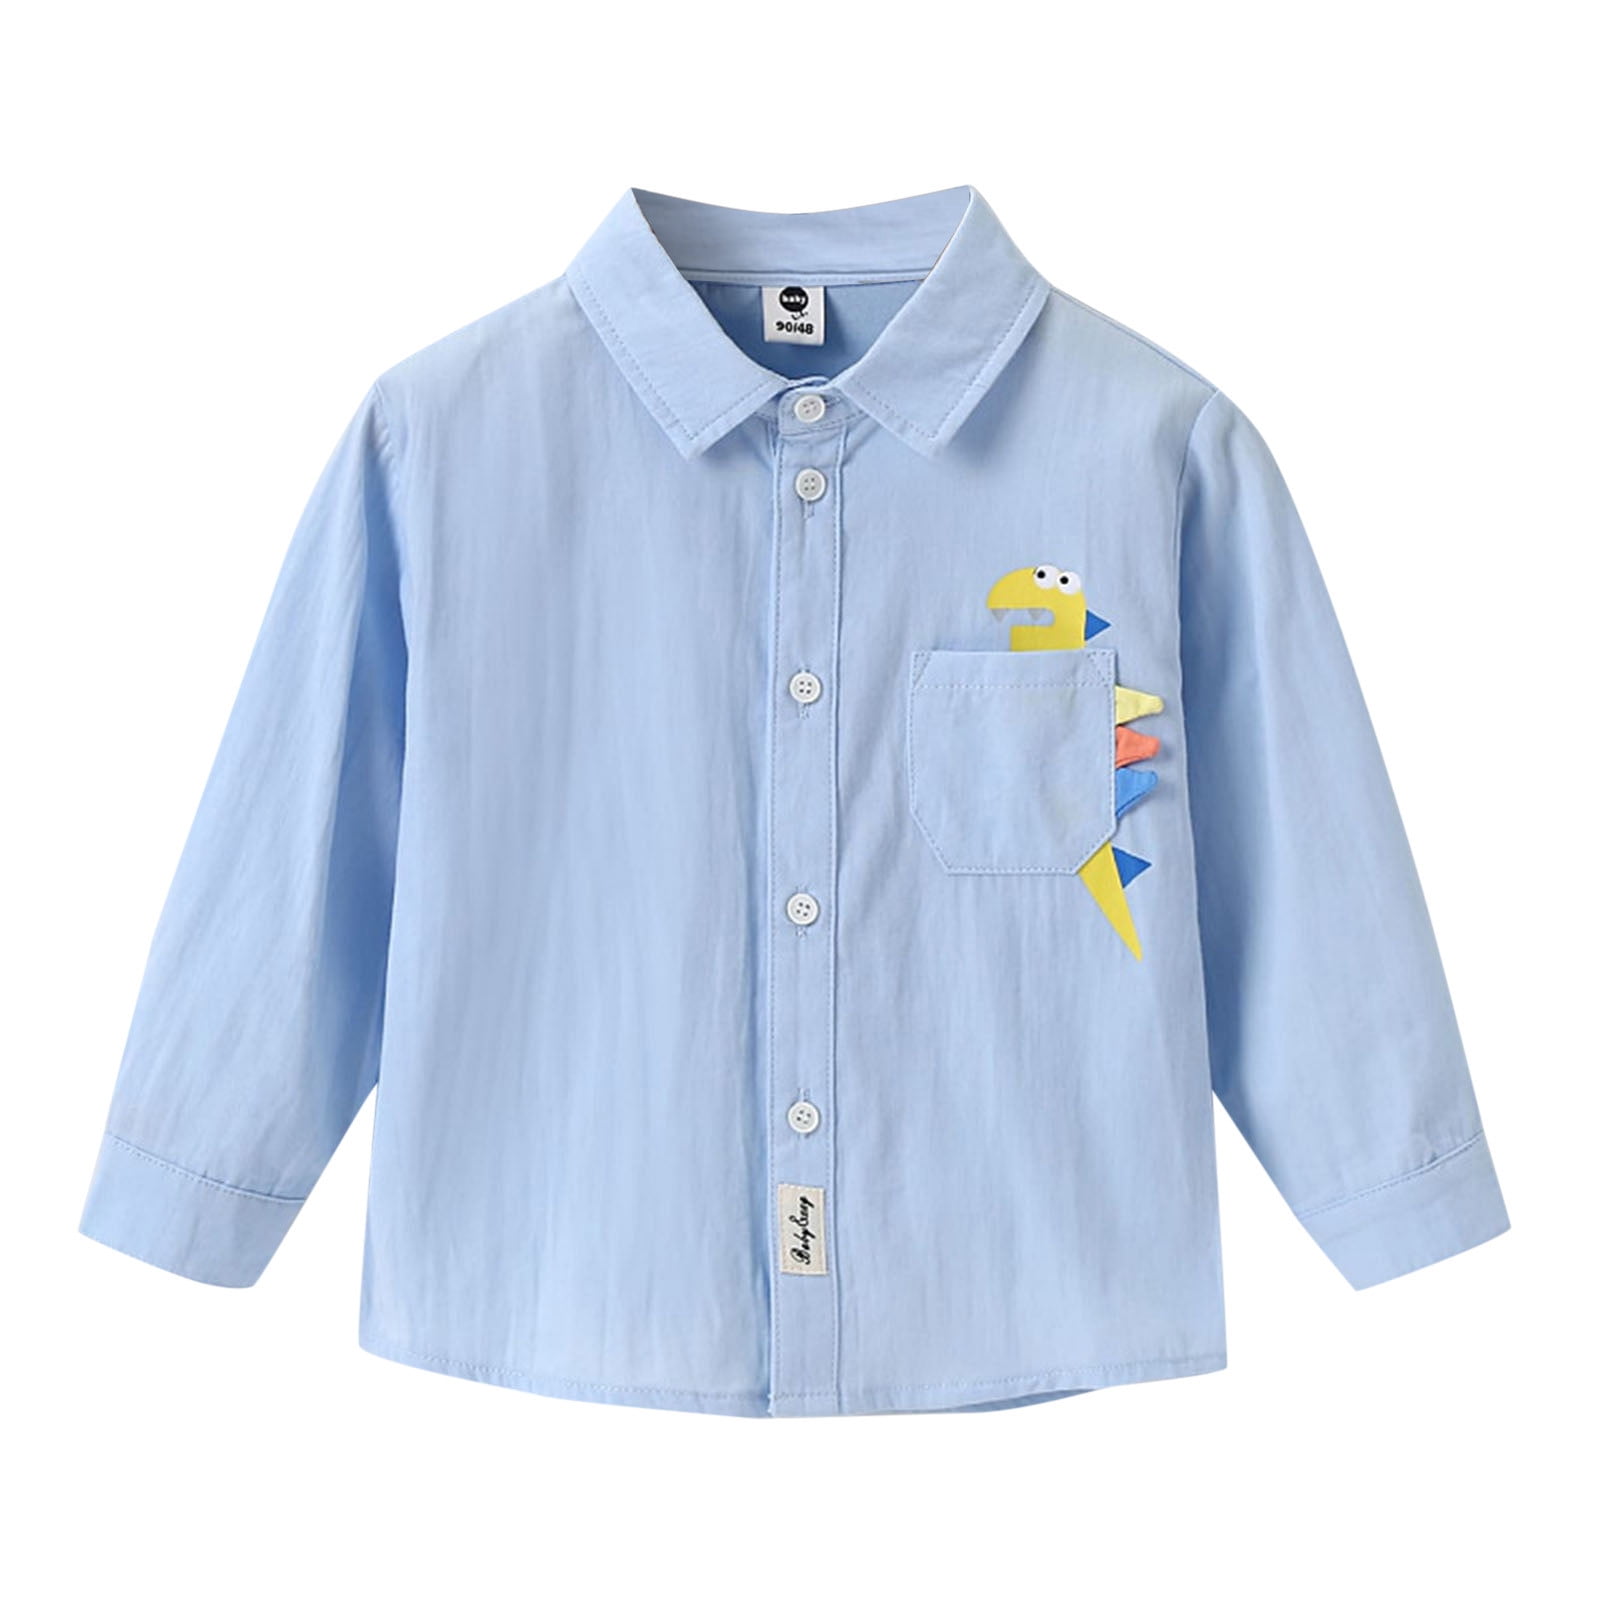 Kids Toddler Baby Boys Girls Shirt Long Sleeve Cartoon Lapel Button ...